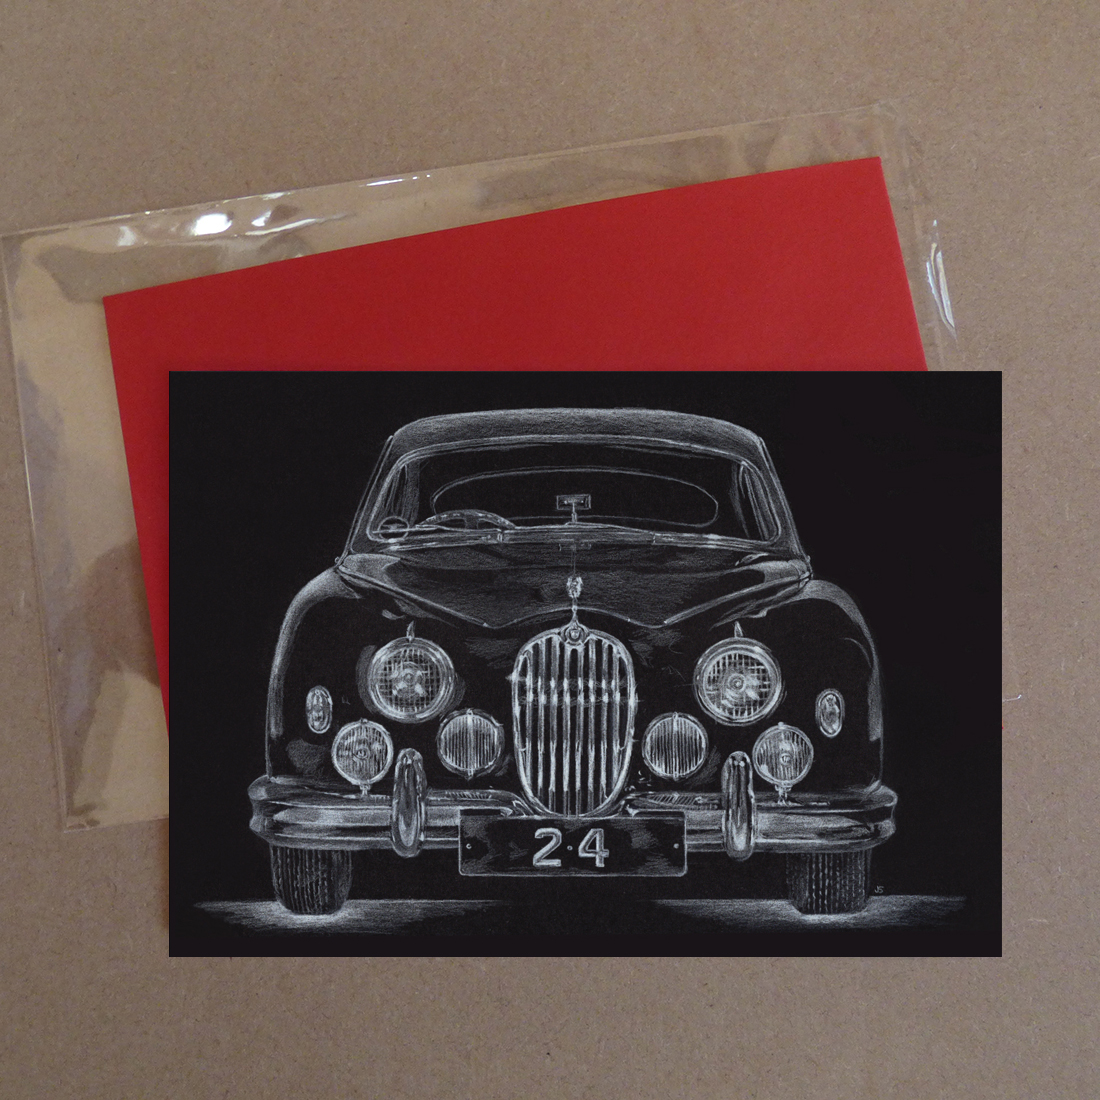 Jaguar Car 2.4 Greeting Card